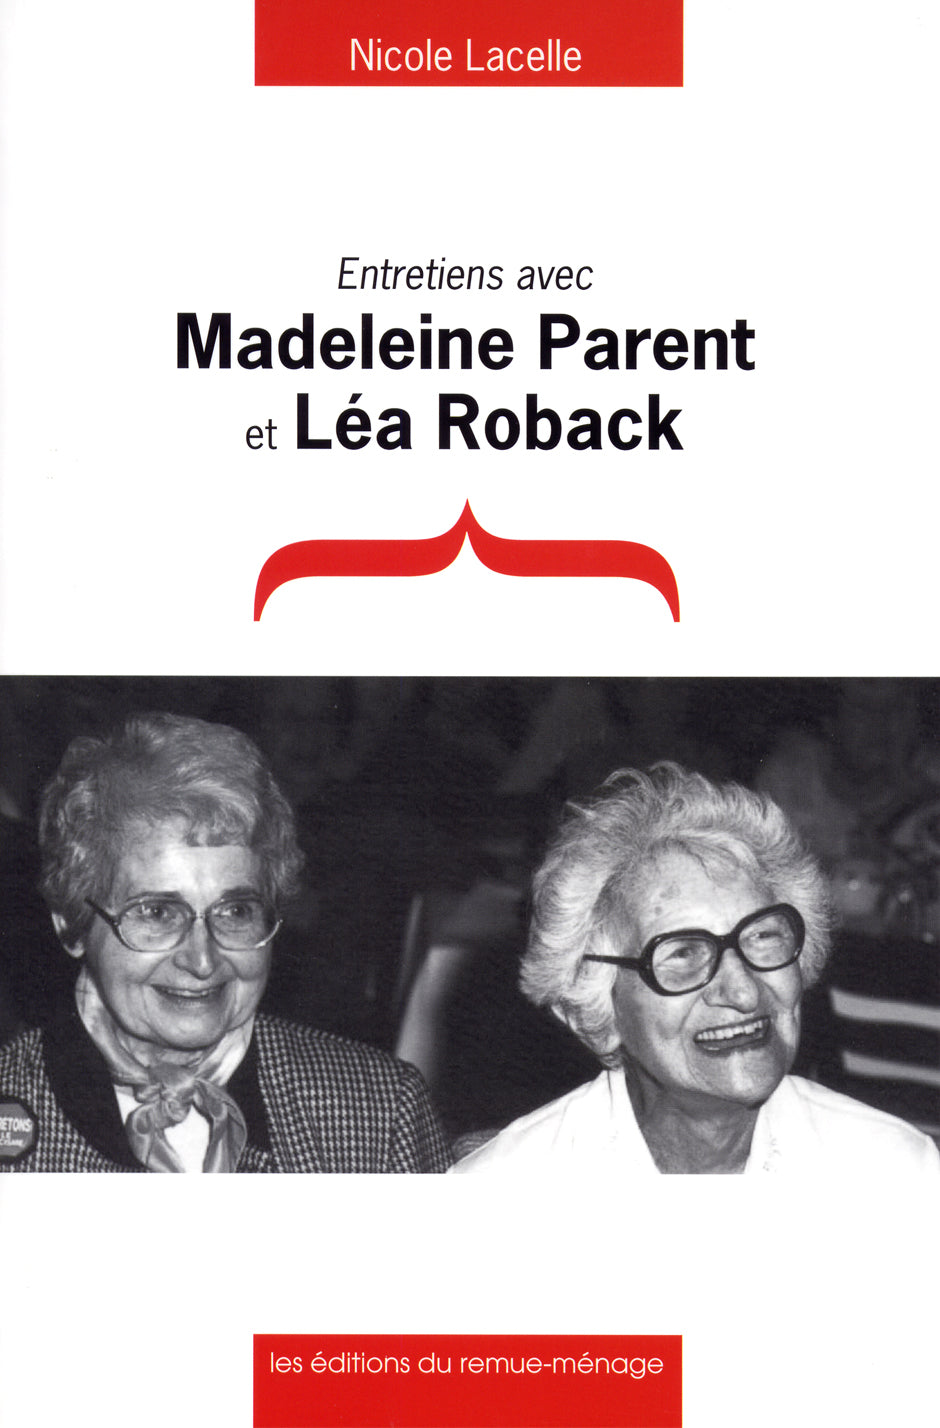 Entretiens avec Madeleine Parent et Lea Roback